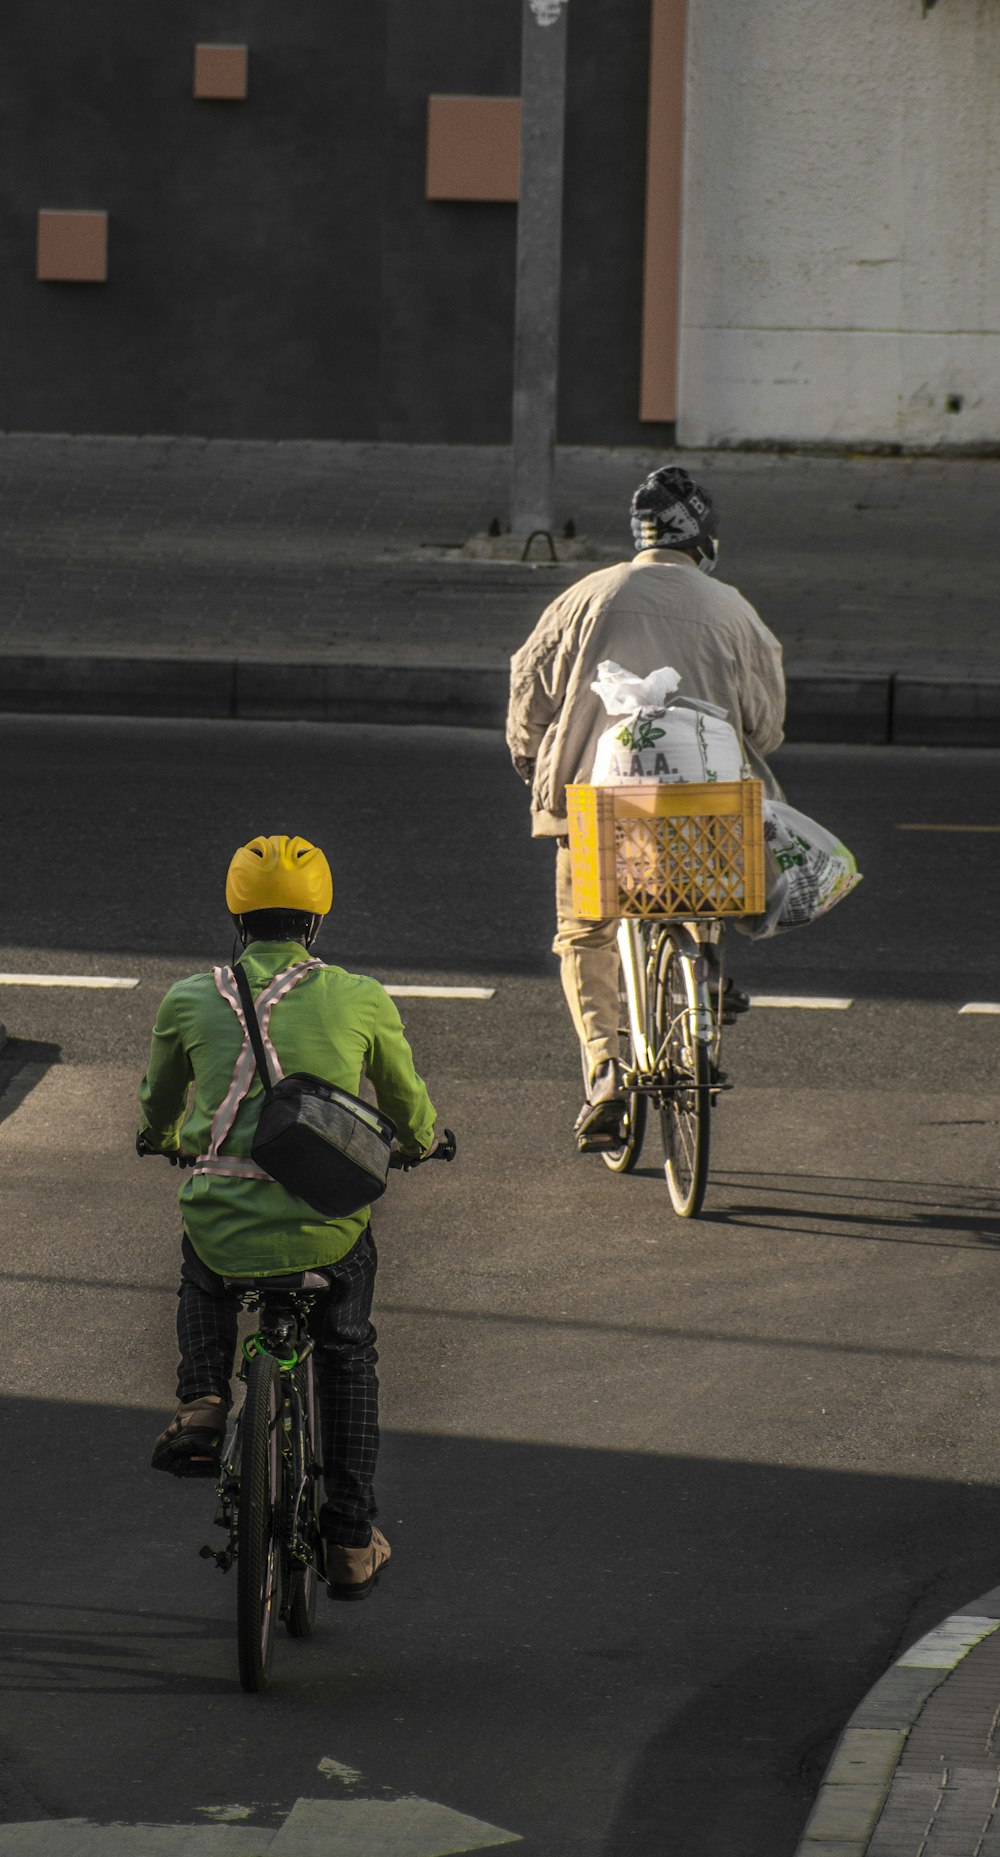 a man riding a bike down a street next to a person on a bike